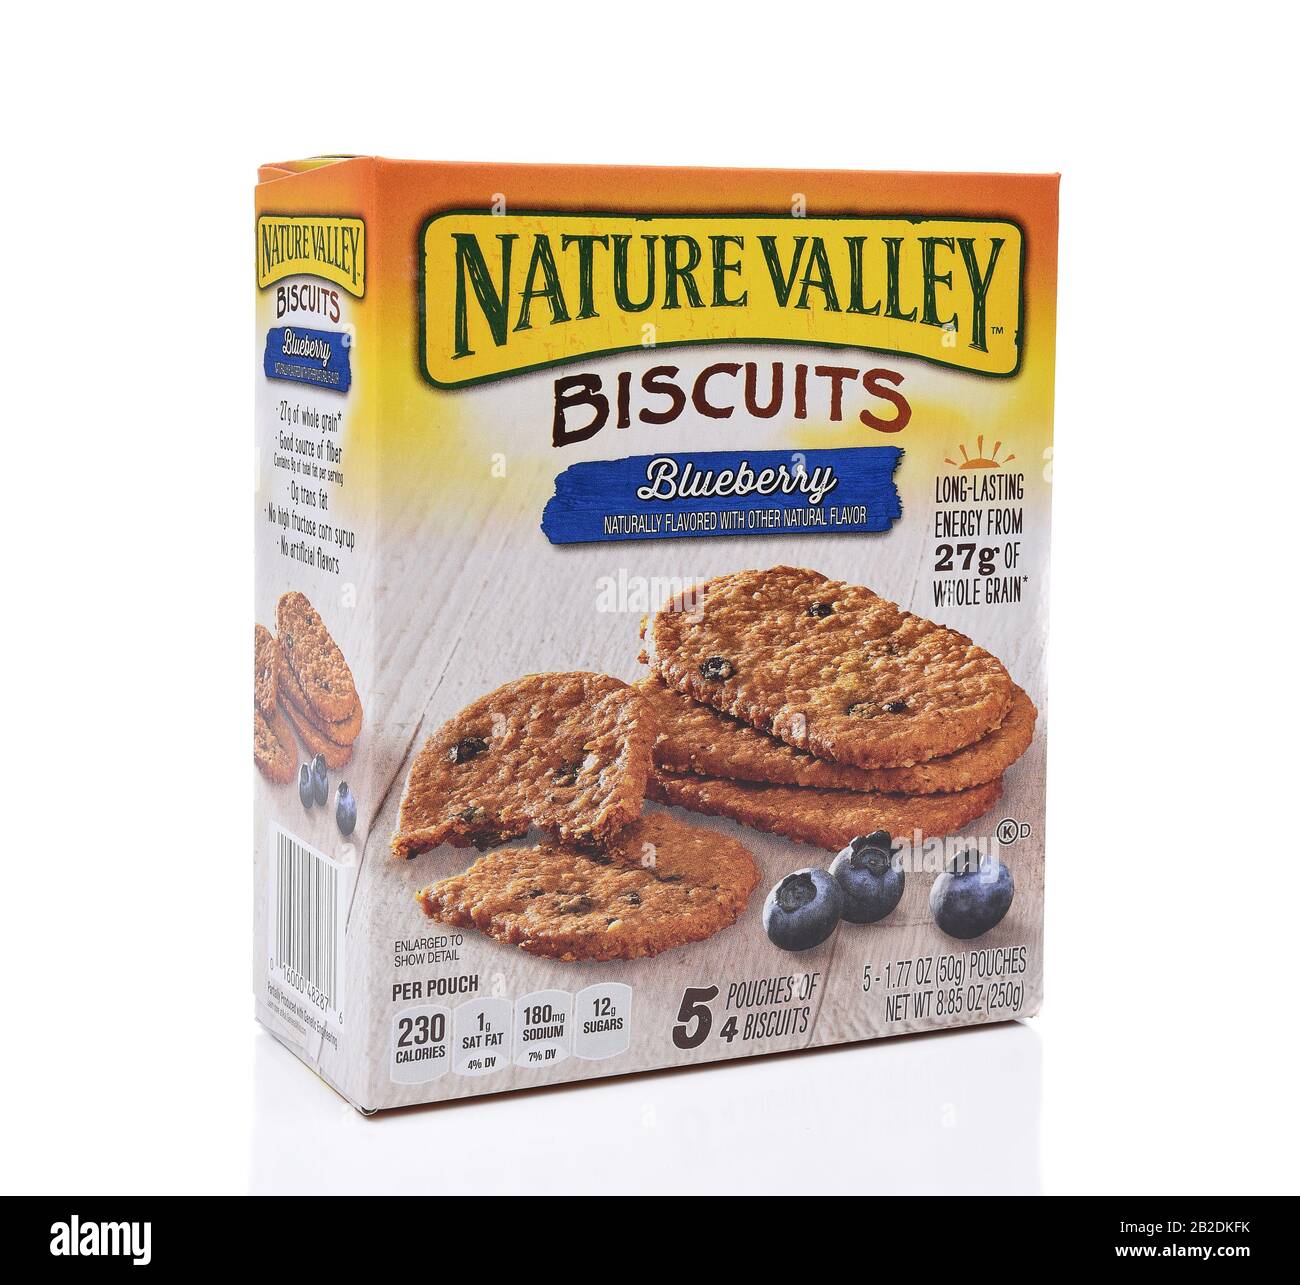 Irvine, CALIFORNIA - 23 AGOSTO 2017: Biscotti Al Mirtillo della natura Valley. Nature Valley è un marchio della General Mills Company. Foto Stock